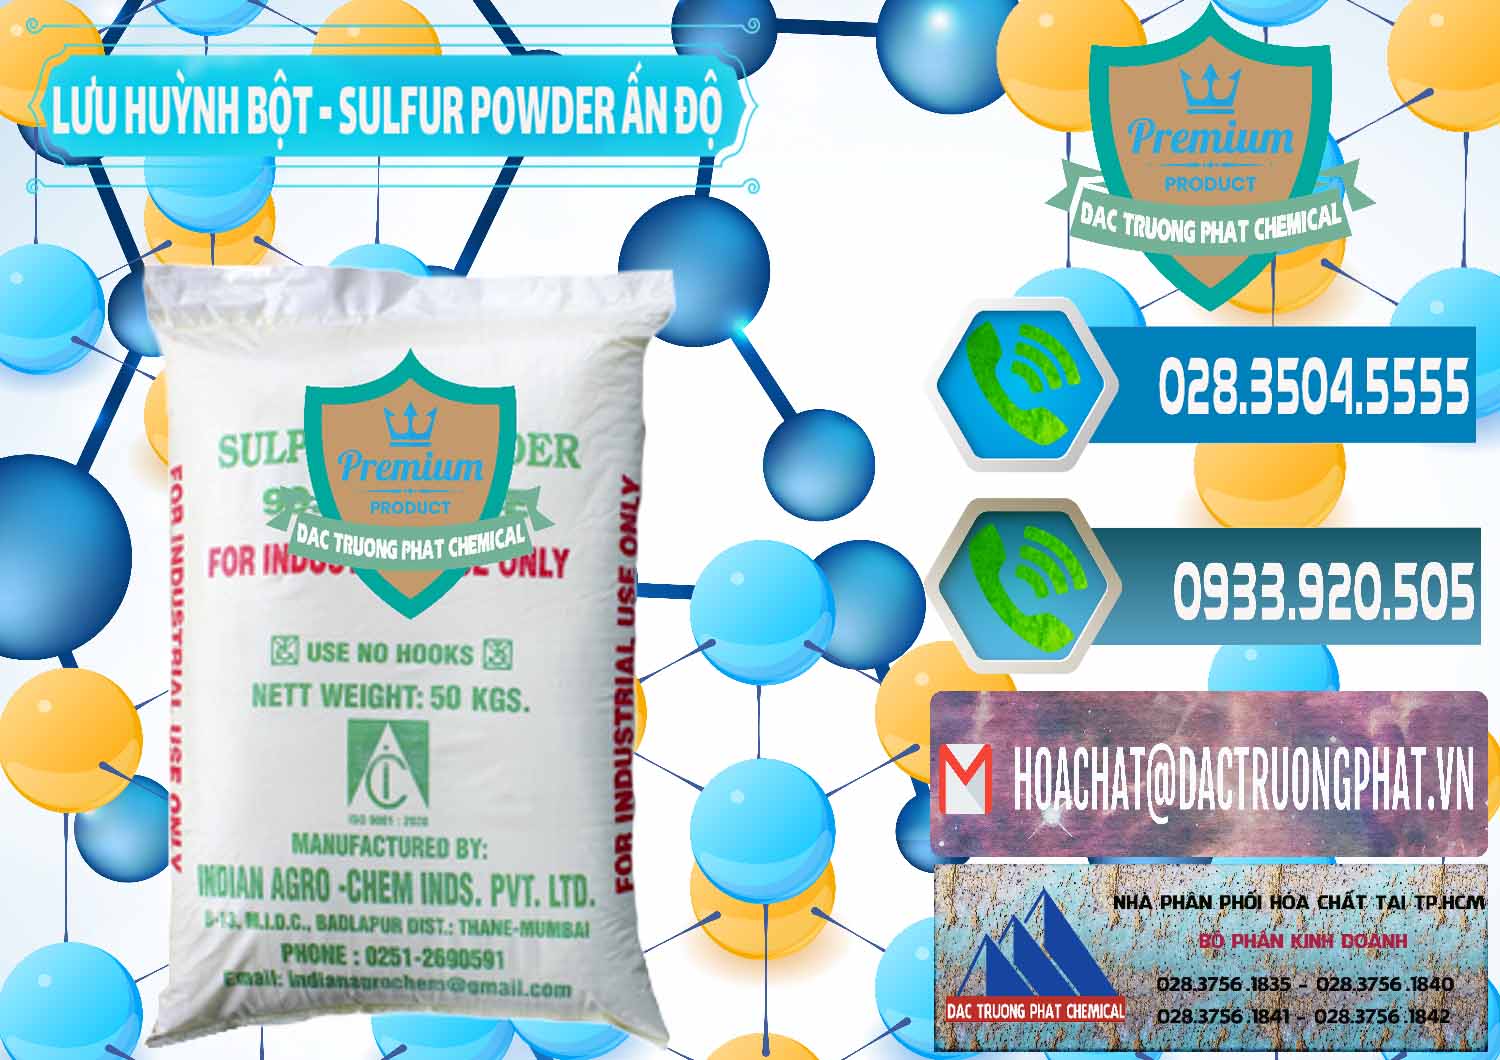 Cty chuyên kinh doanh và bán Lưu huỳnh Bột - Sulfur Powder Ấn Độ India - 0347 - Cty phân phối _ cung cấp hóa chất tại TP.HCM - congtyhoachat.net